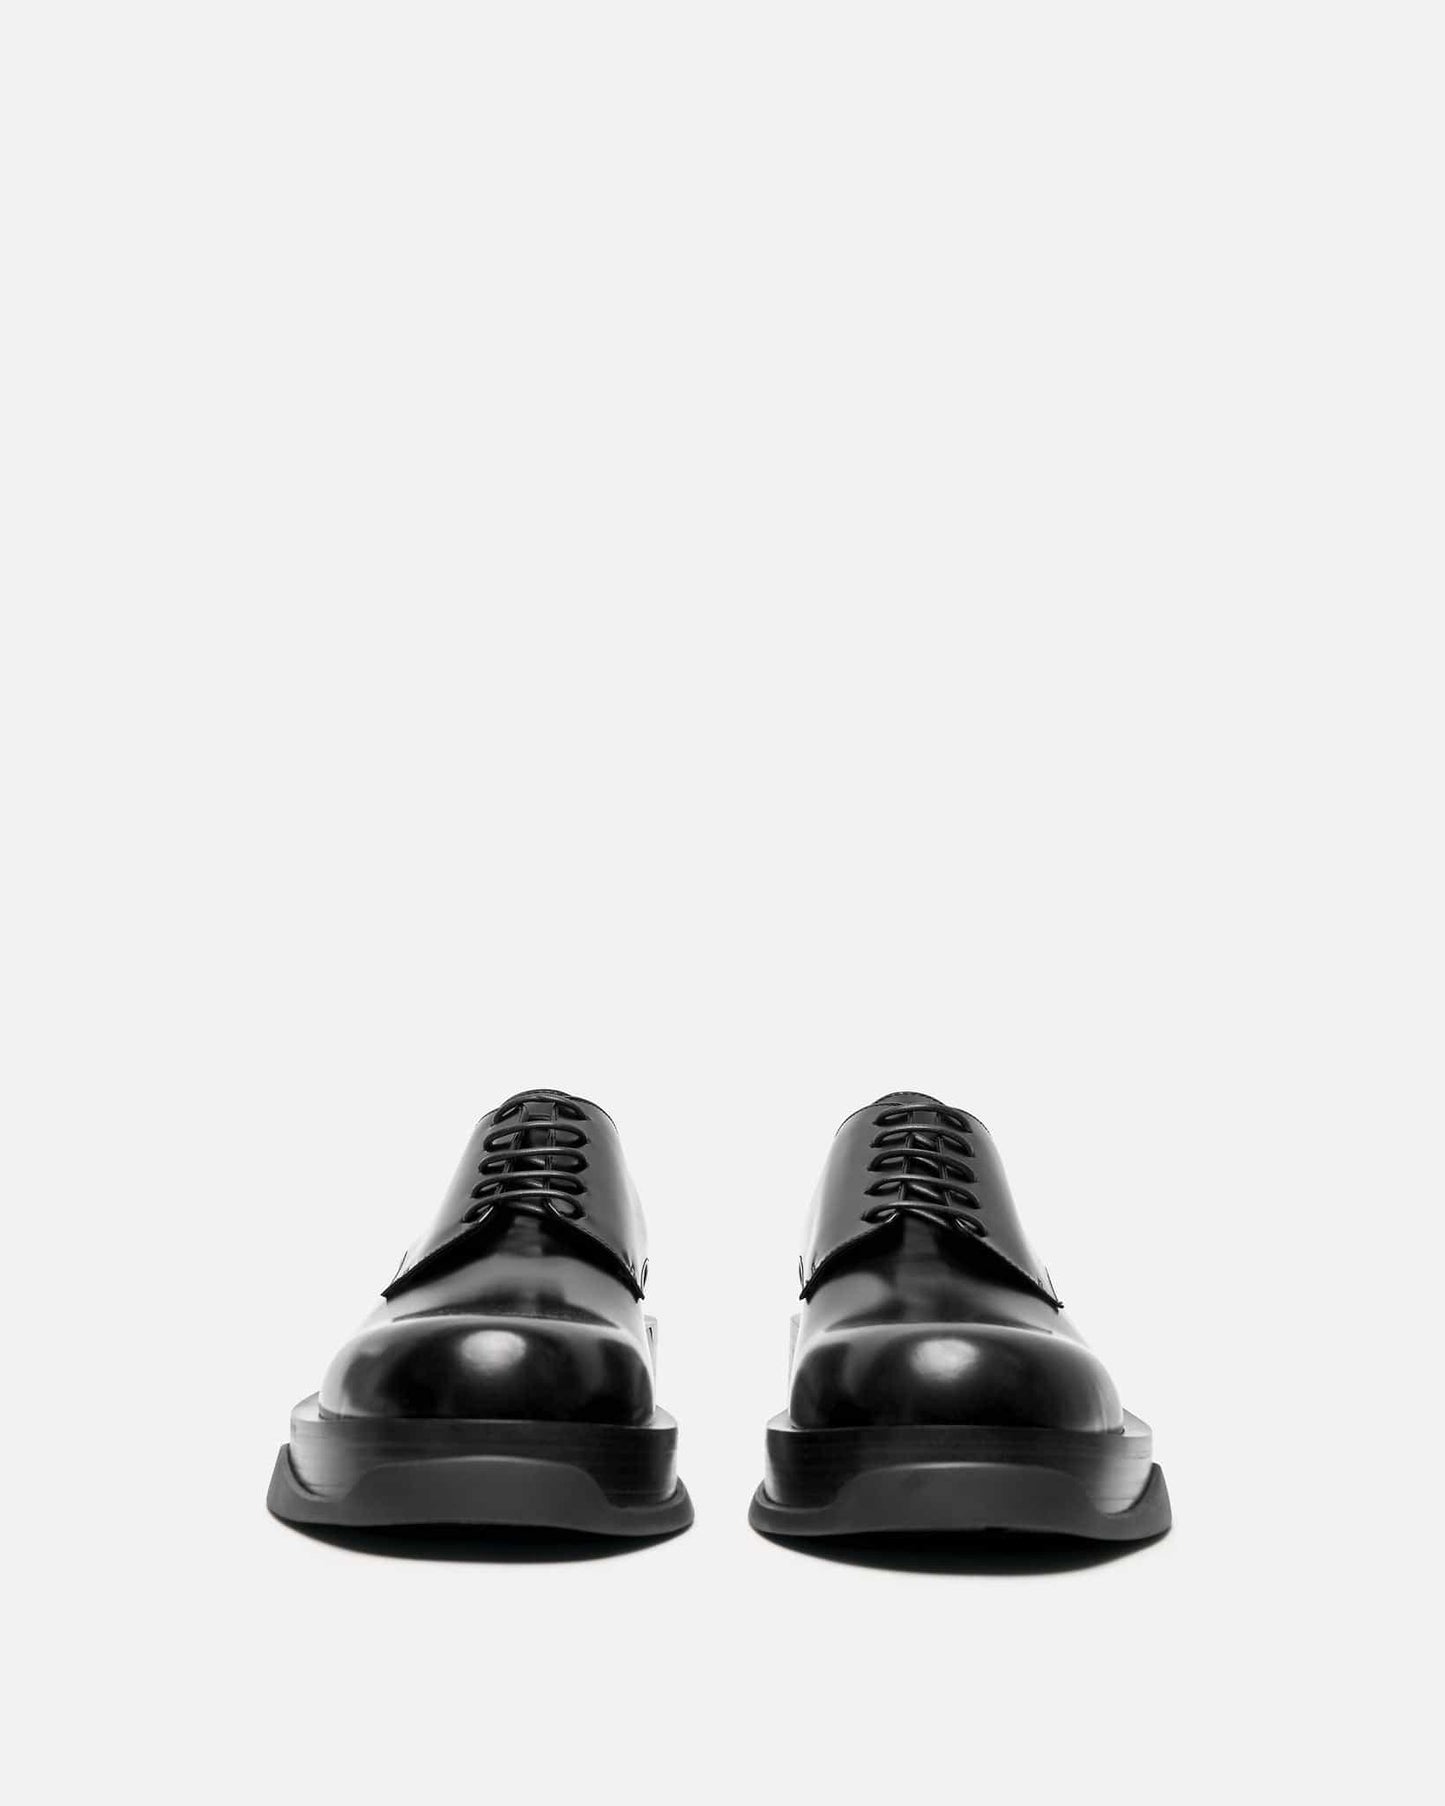 Jil Sander Men's Shoes Spazzolato Calf Leather Shoe in Black